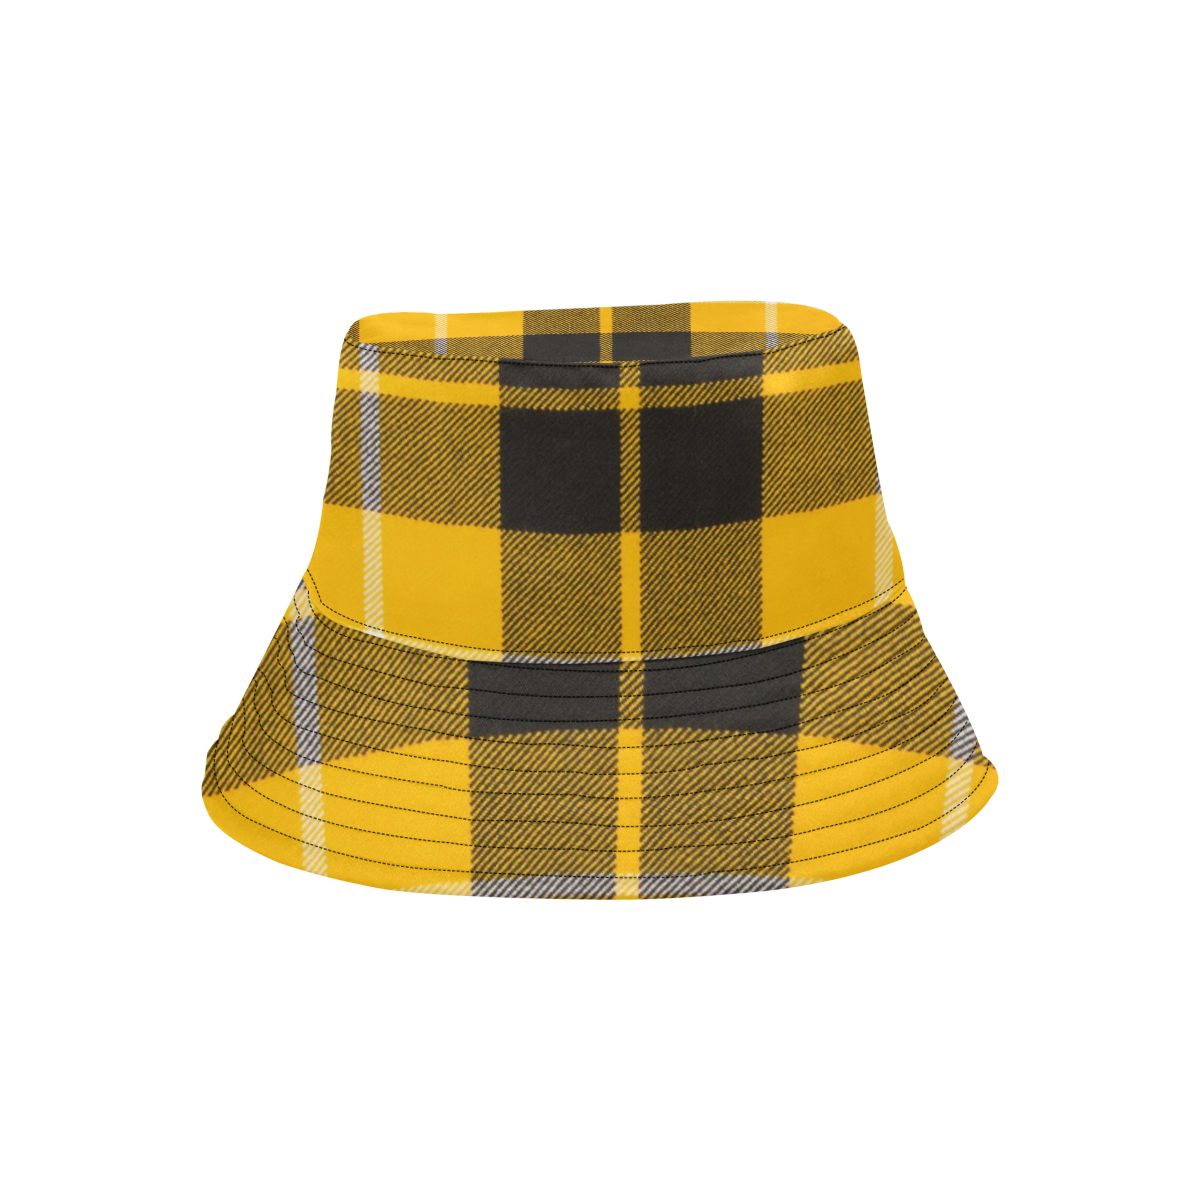 BARCLAY DRESS LIGHT MODERN TARTAN All Over Print Bucket Hat